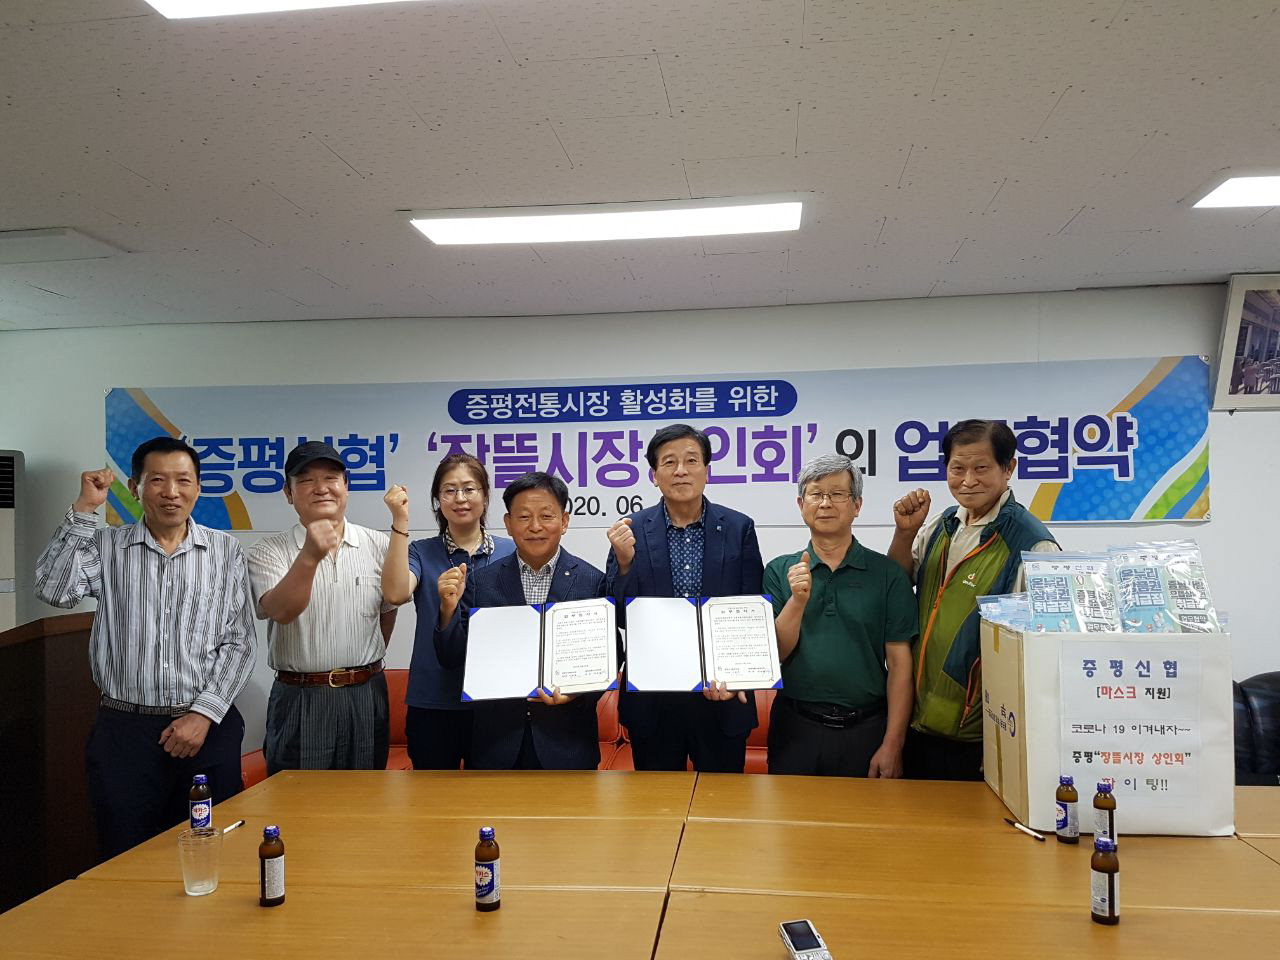 증평신협과 증평장뜰시장상인회가 30일 전통시장 활성화를 위한 업무협약을 체결했다.